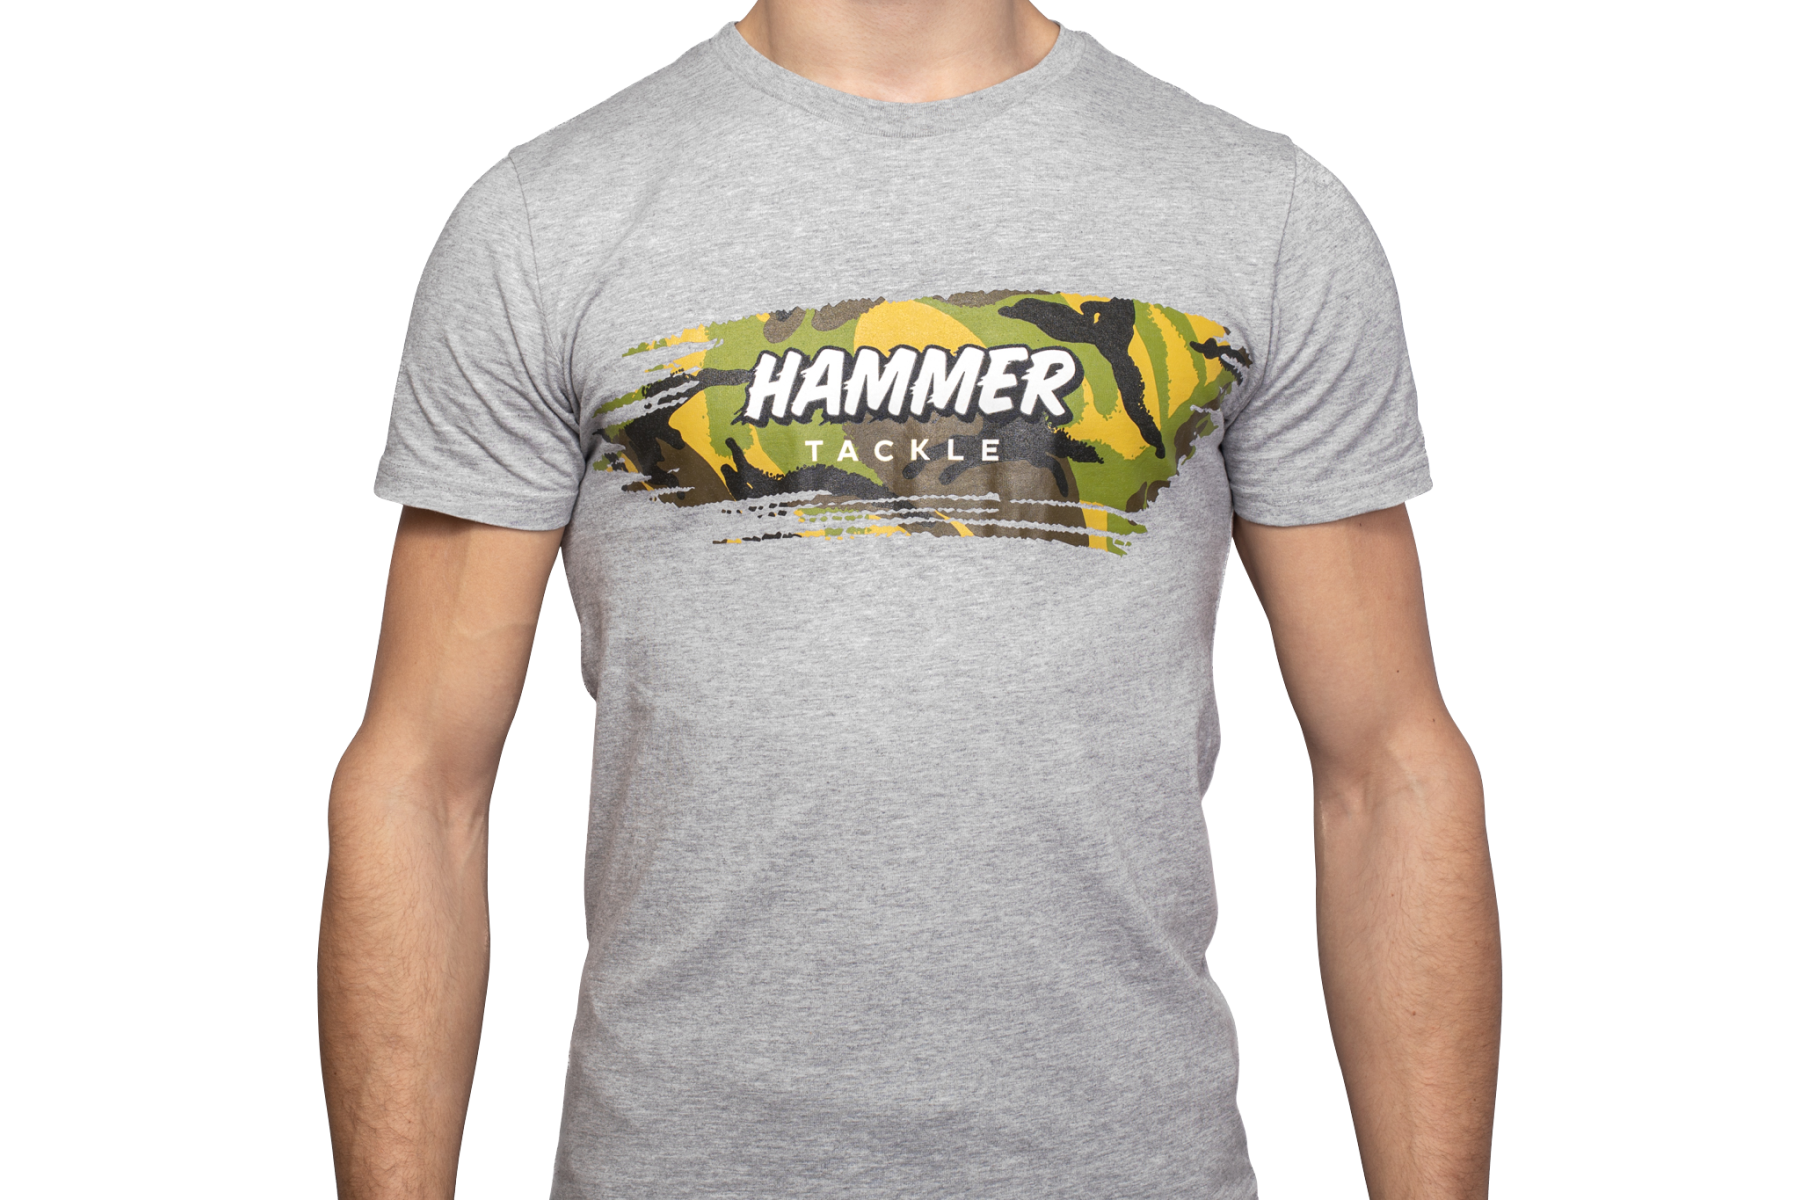 Hammer Shirt "Camo Brush"